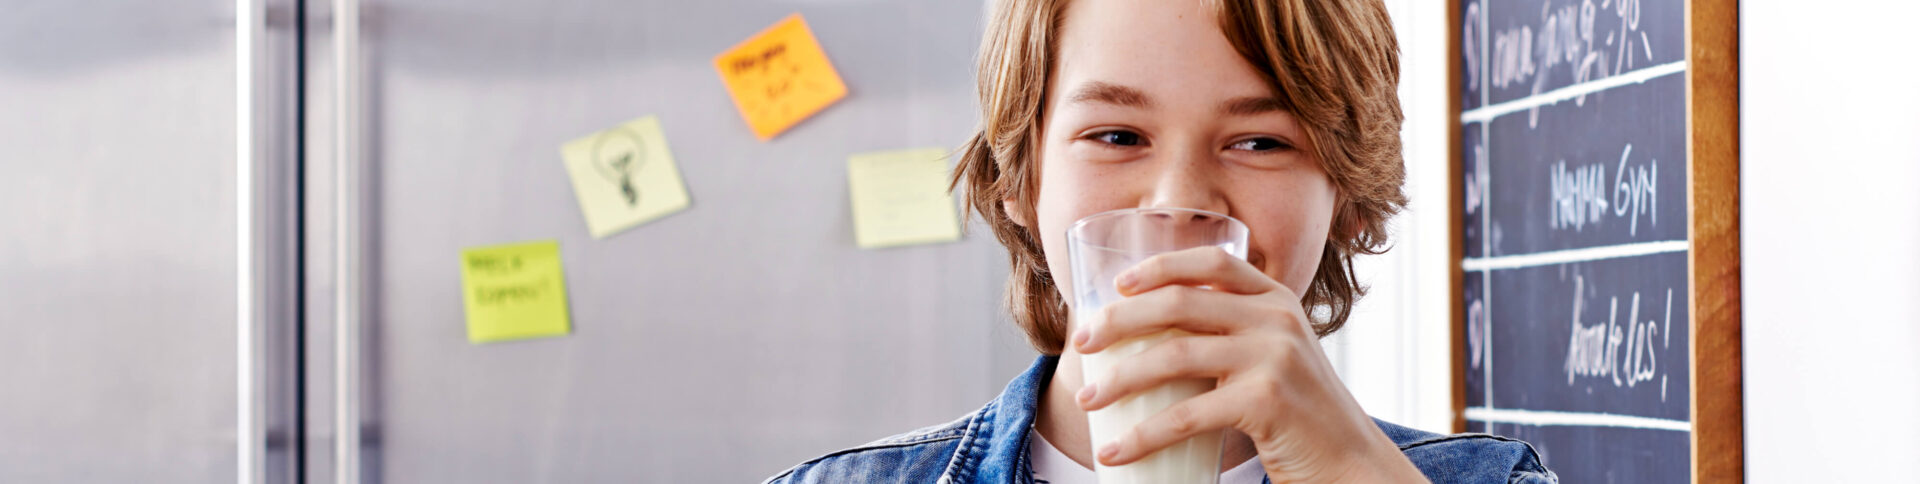 Jongen drinkt glas melk